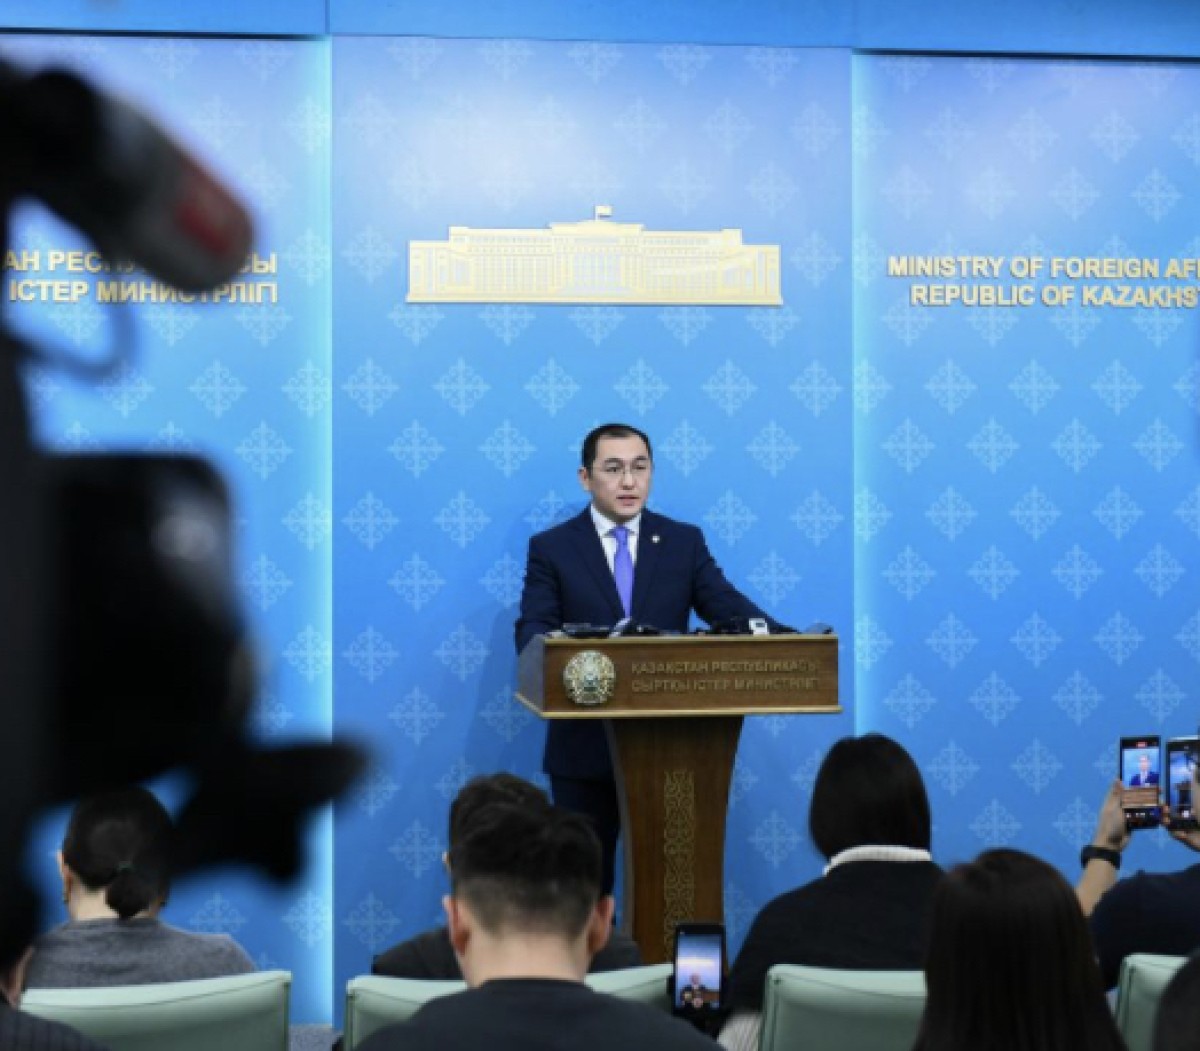 МИД РК: Казахстан поддерживает принципа «одного Китая». Тайвань часть Китая